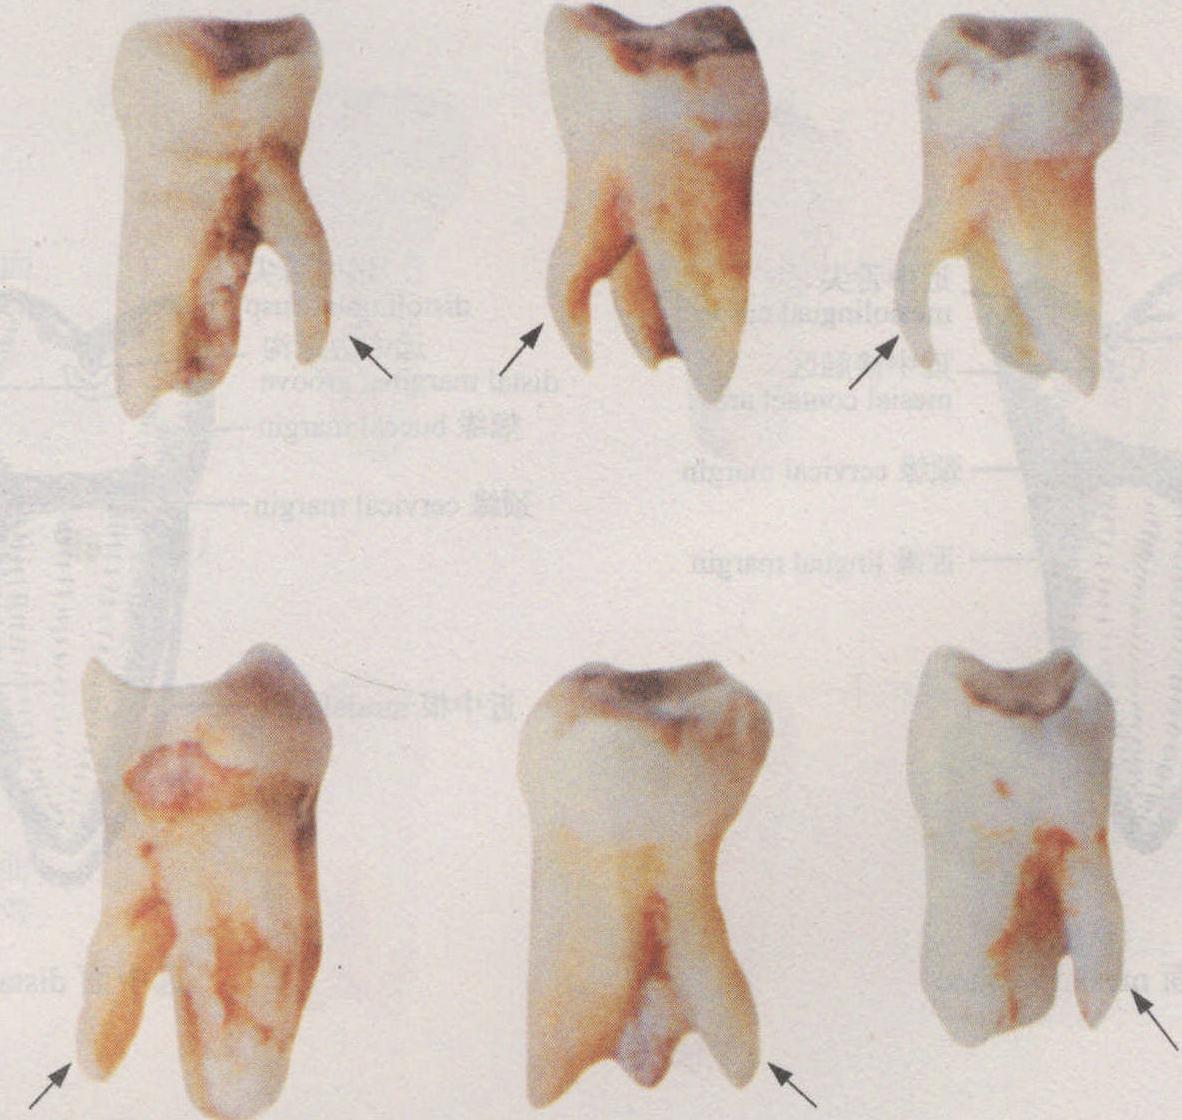 牙菌斑图片牙结石-千图网